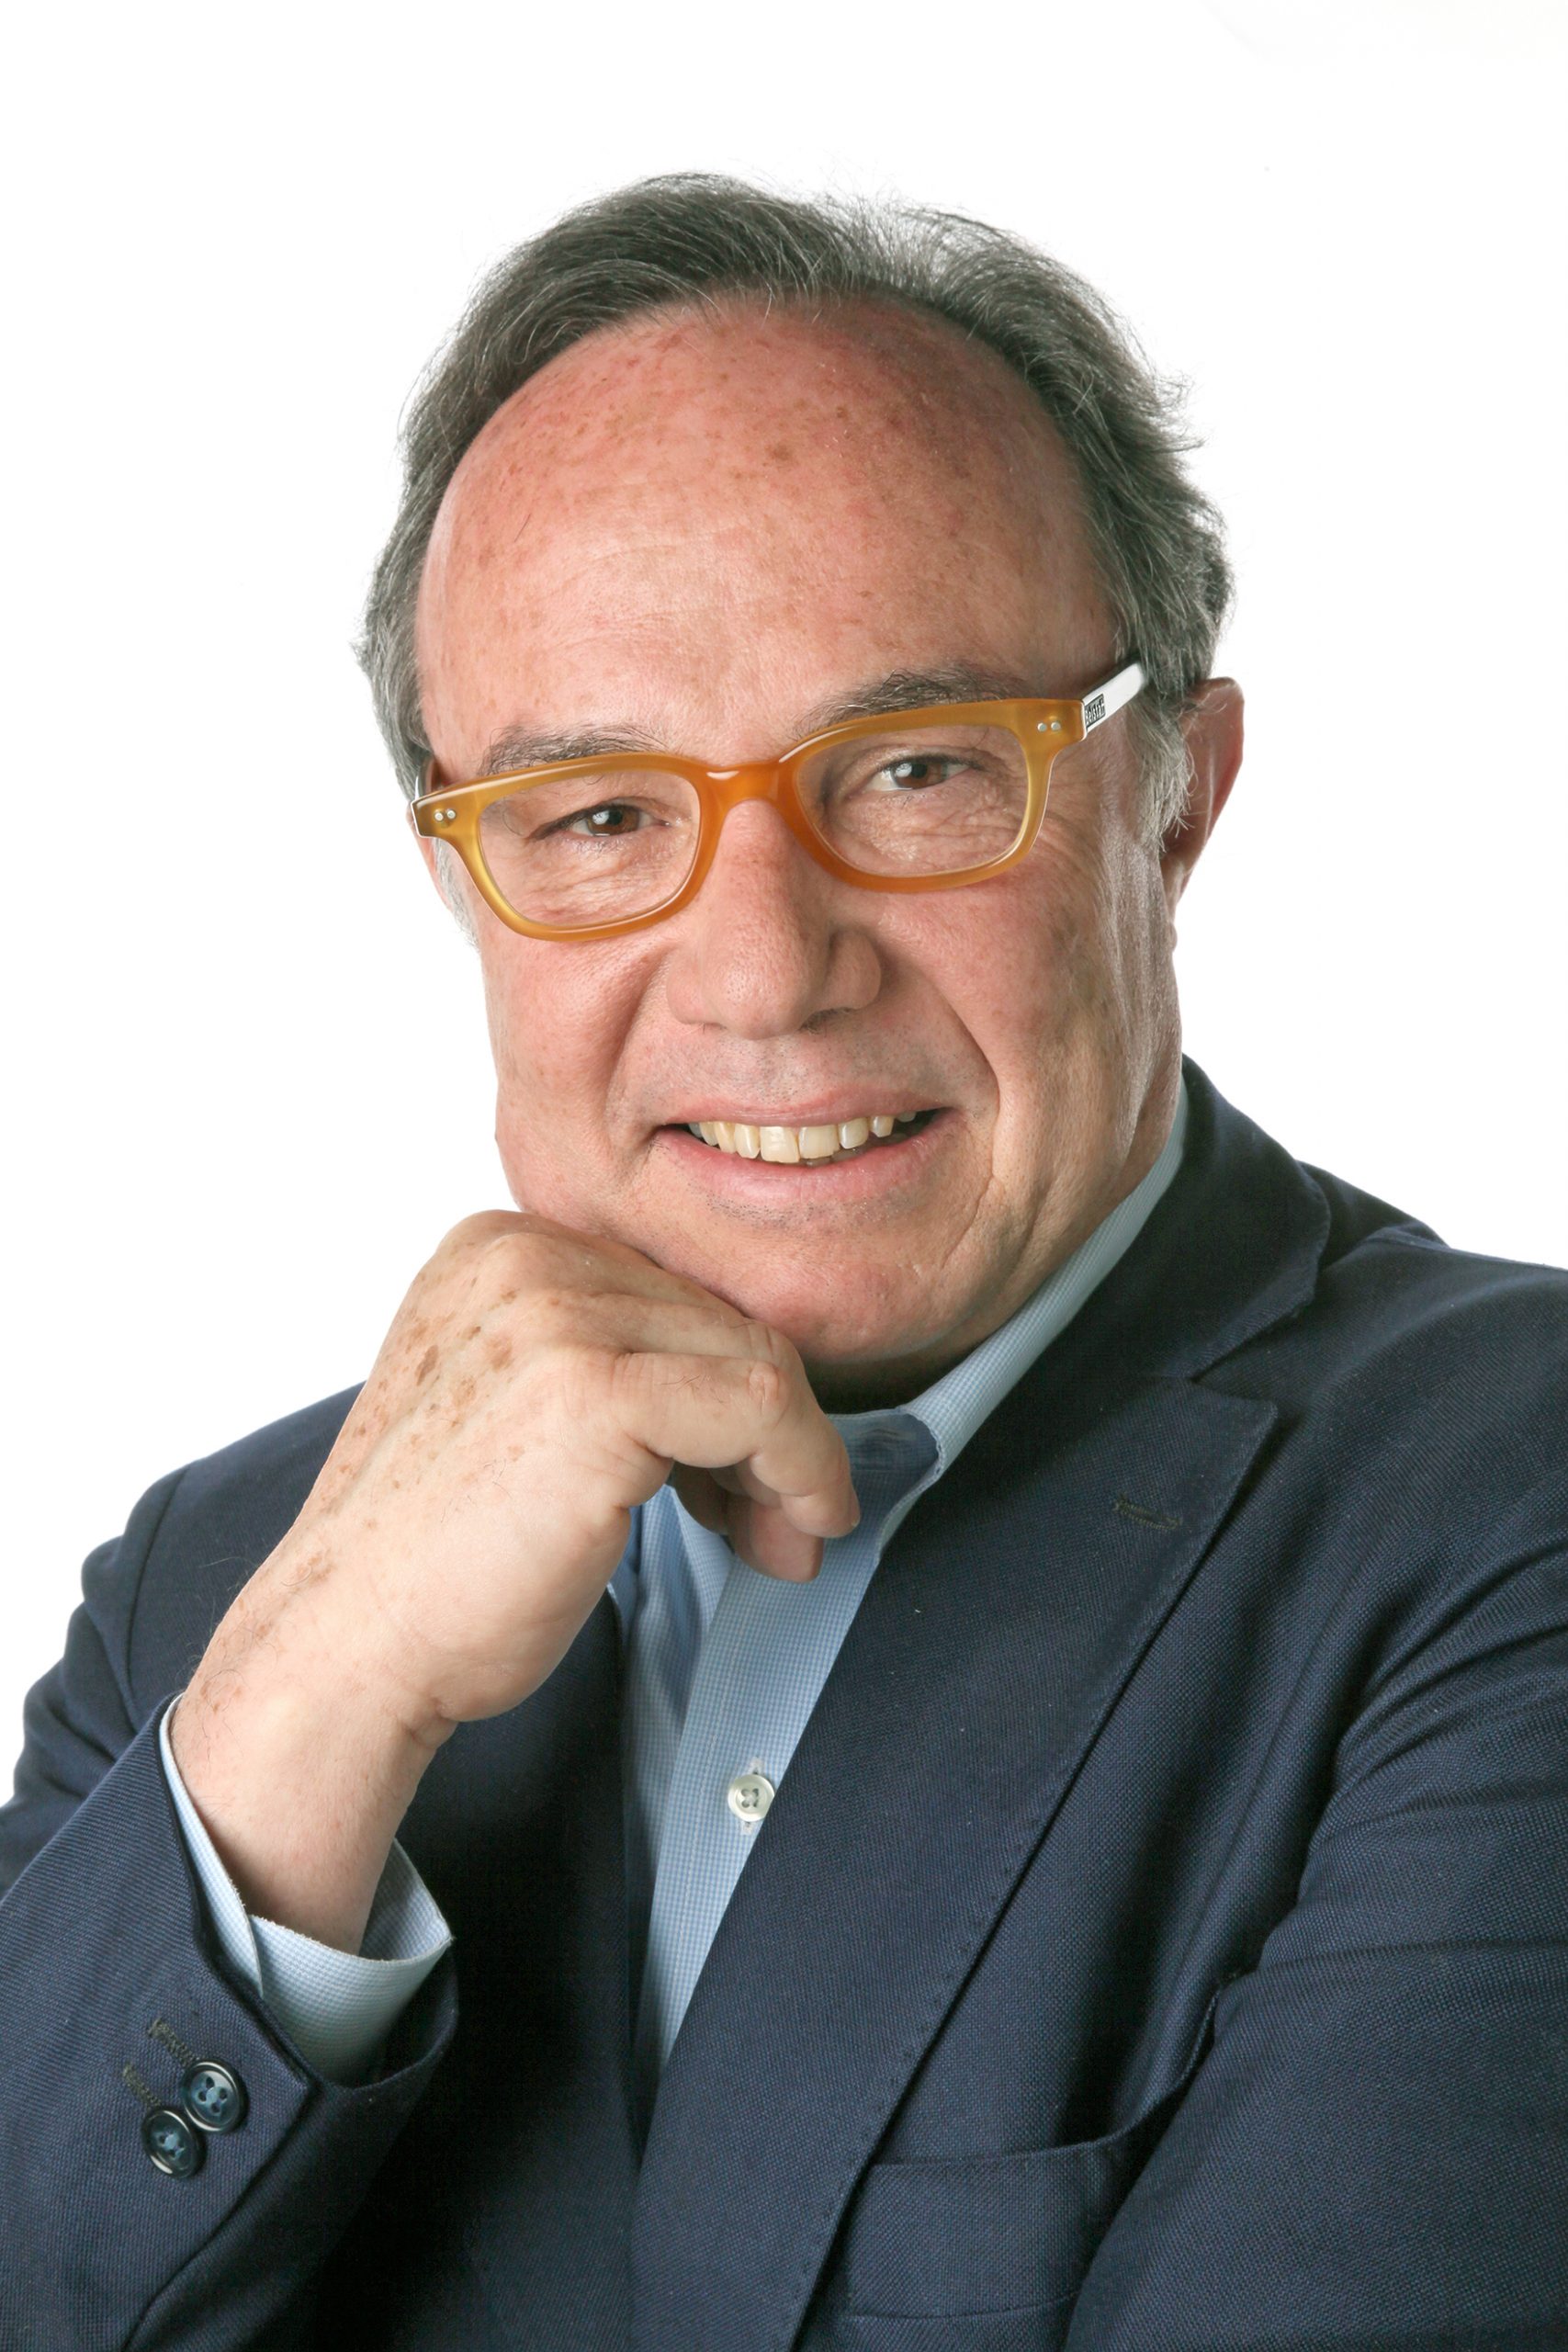 Pierre J. Magistretti es un neurocientífico y médico italiano y suizo. Es profesor emérito de neurociencia en la EPFL, la Universidad de Ginebra y la Universidad de Lausana.